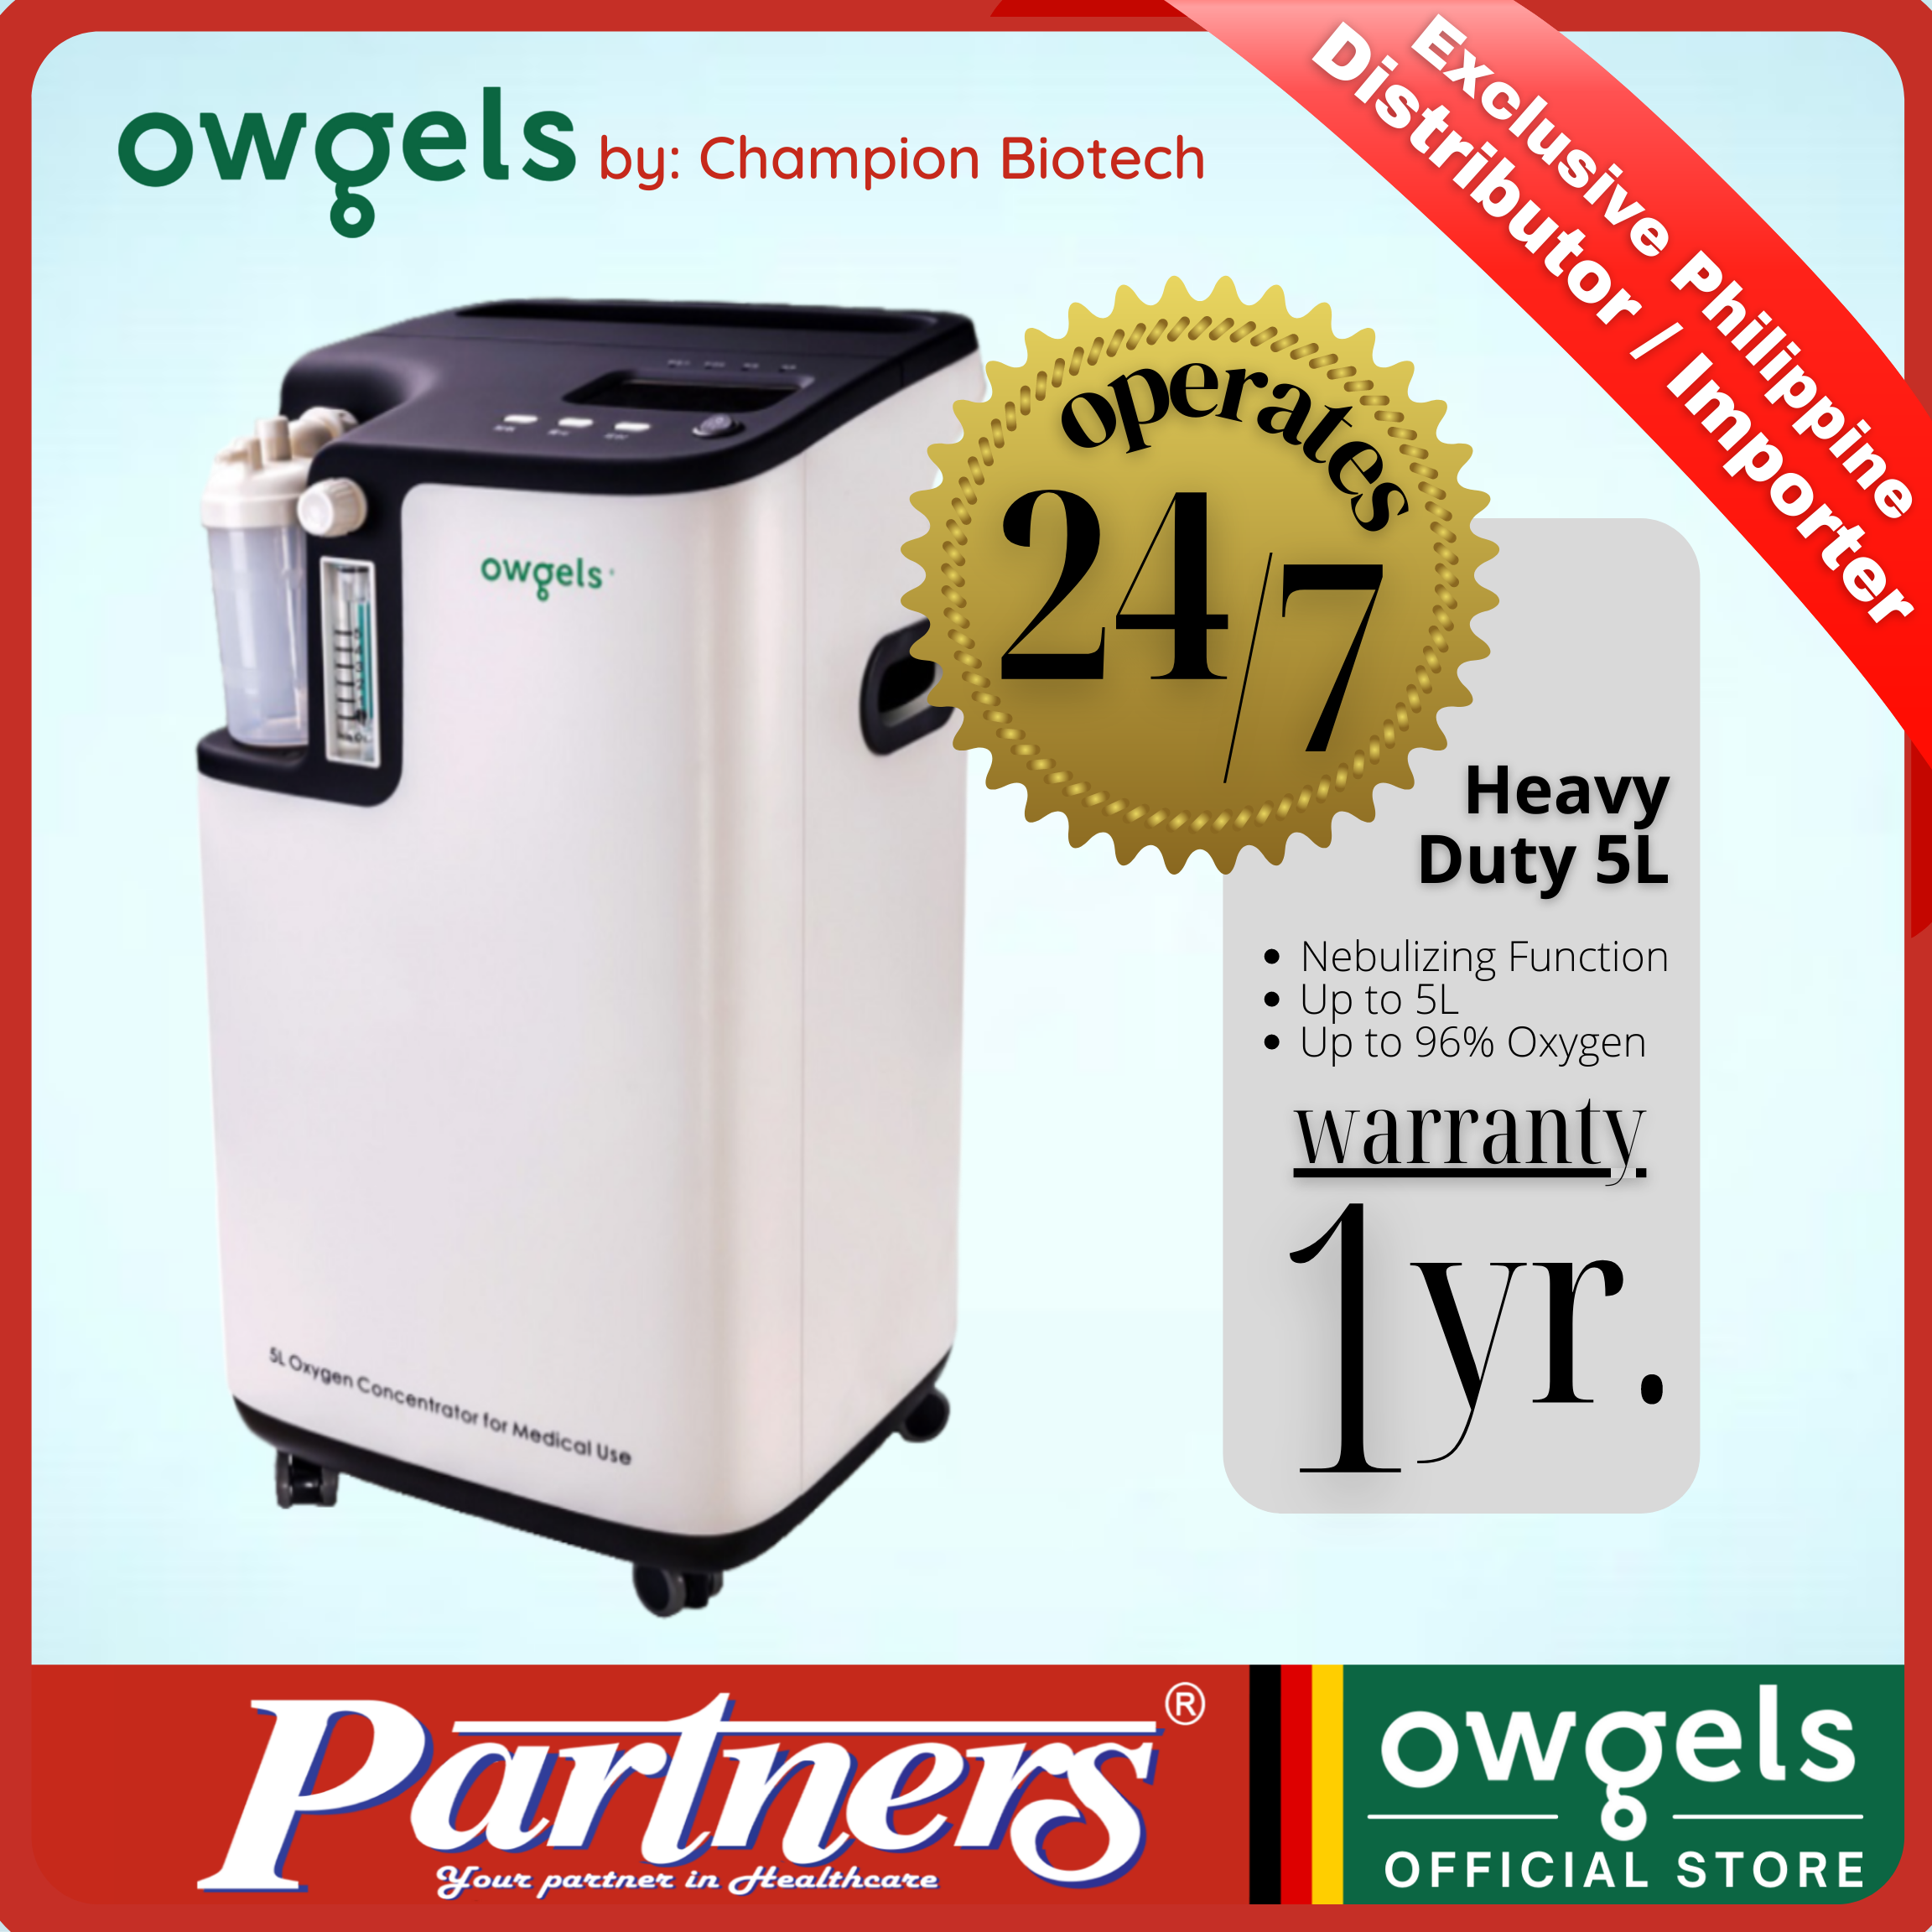 Concentrator owgels oxygen 10 Liter